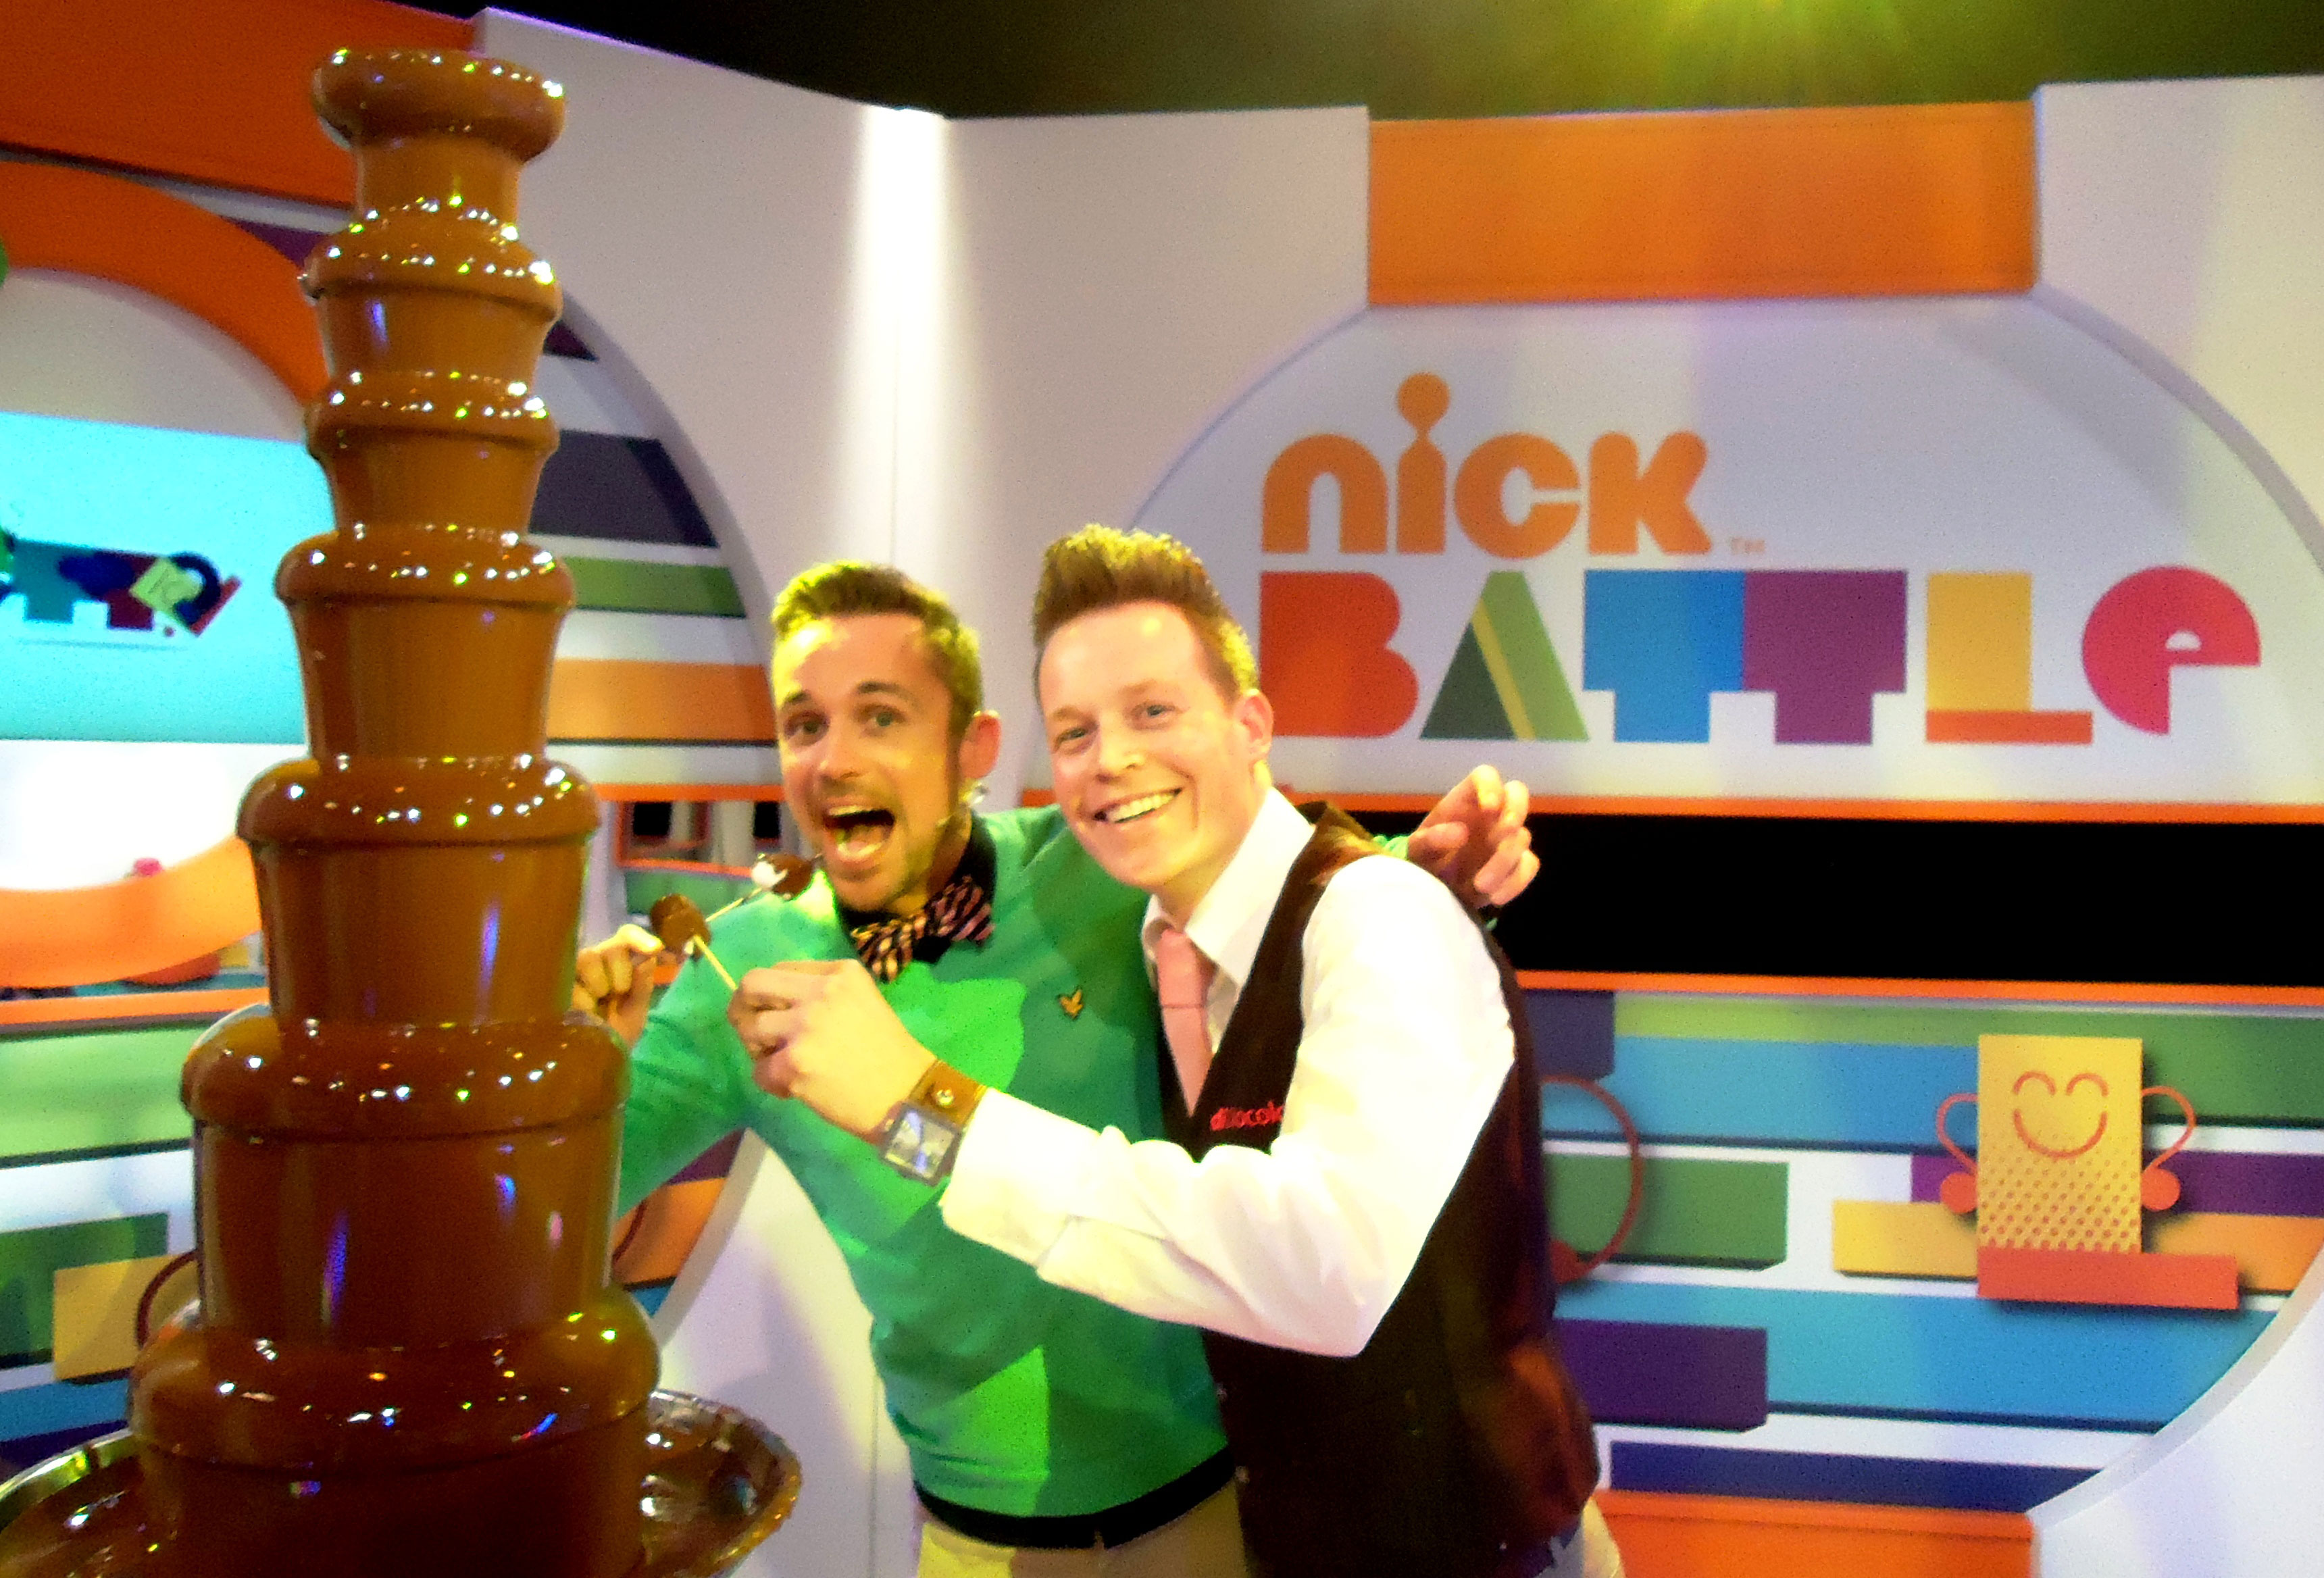 In 2012 waren we te gast bij de opnames van Nickelodeon in Hilversum. Onze mega XXL-chocoladefontein werd gebruikt voor de uitzending Nick Battle.